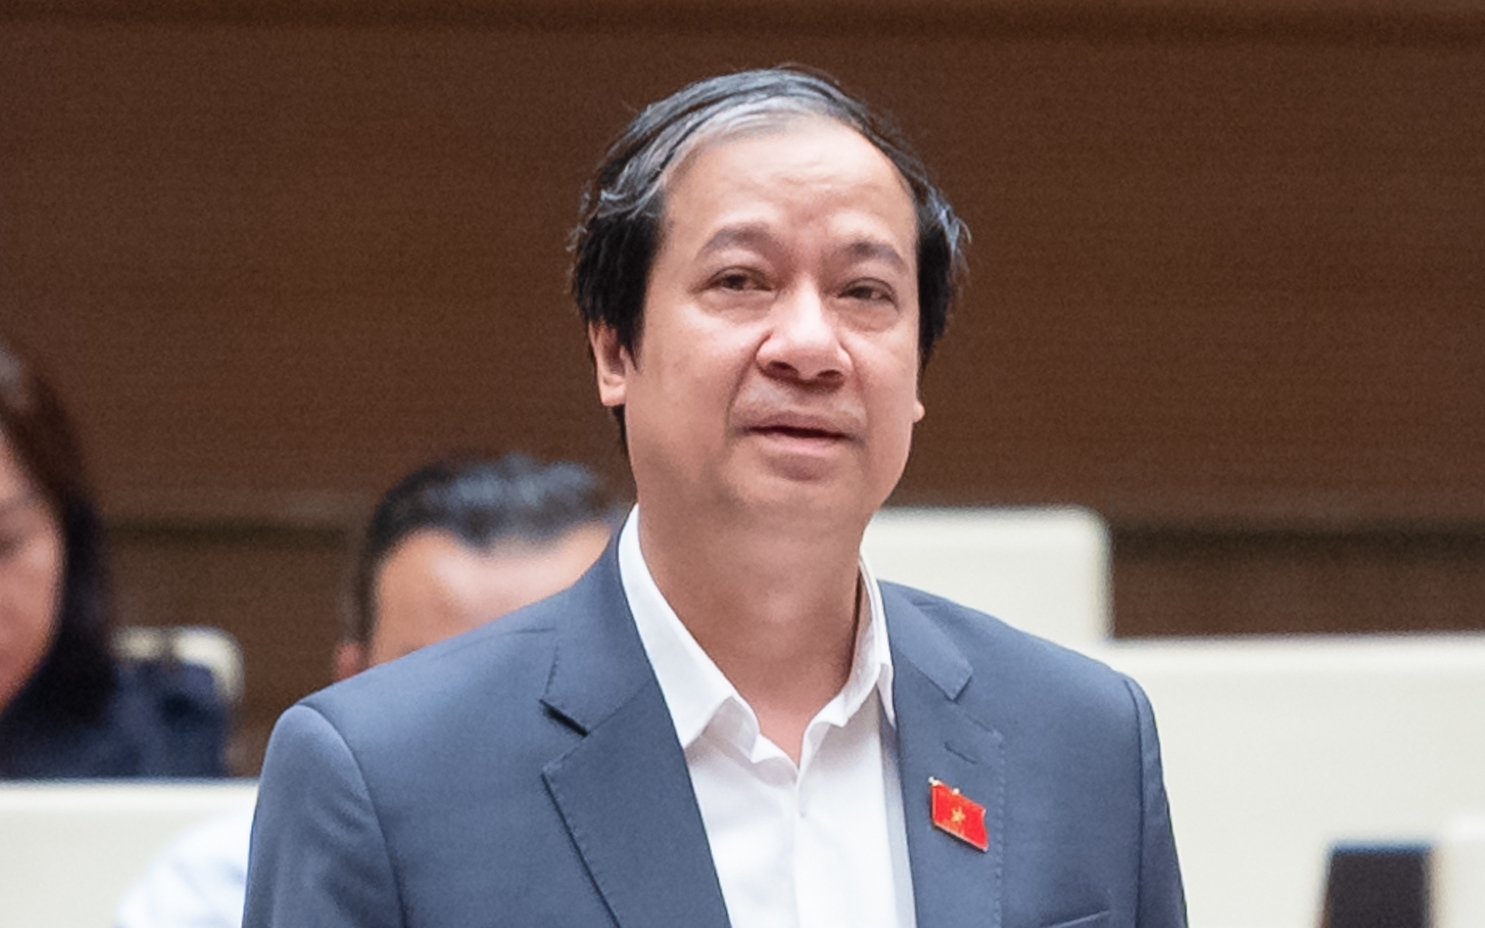 Bộ trưởng Bộ GD&ĐT Nguyễn Kim Sơn: "Không thể tay không bắt Chip"